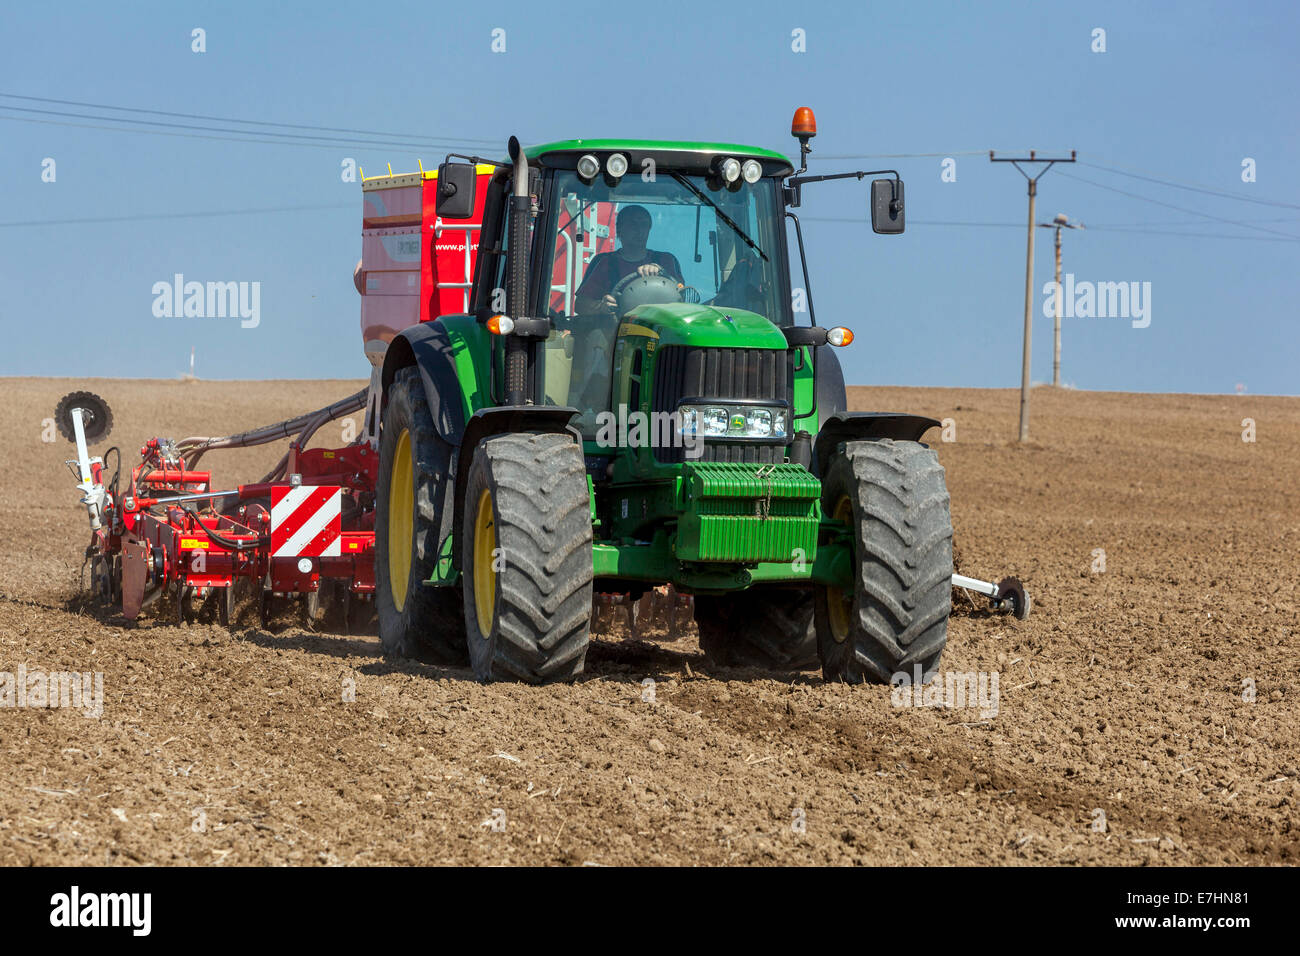 John Deere tractor sowing seeds on a field, wheat, seasonal work, Czech Republic farmer Stock Photo